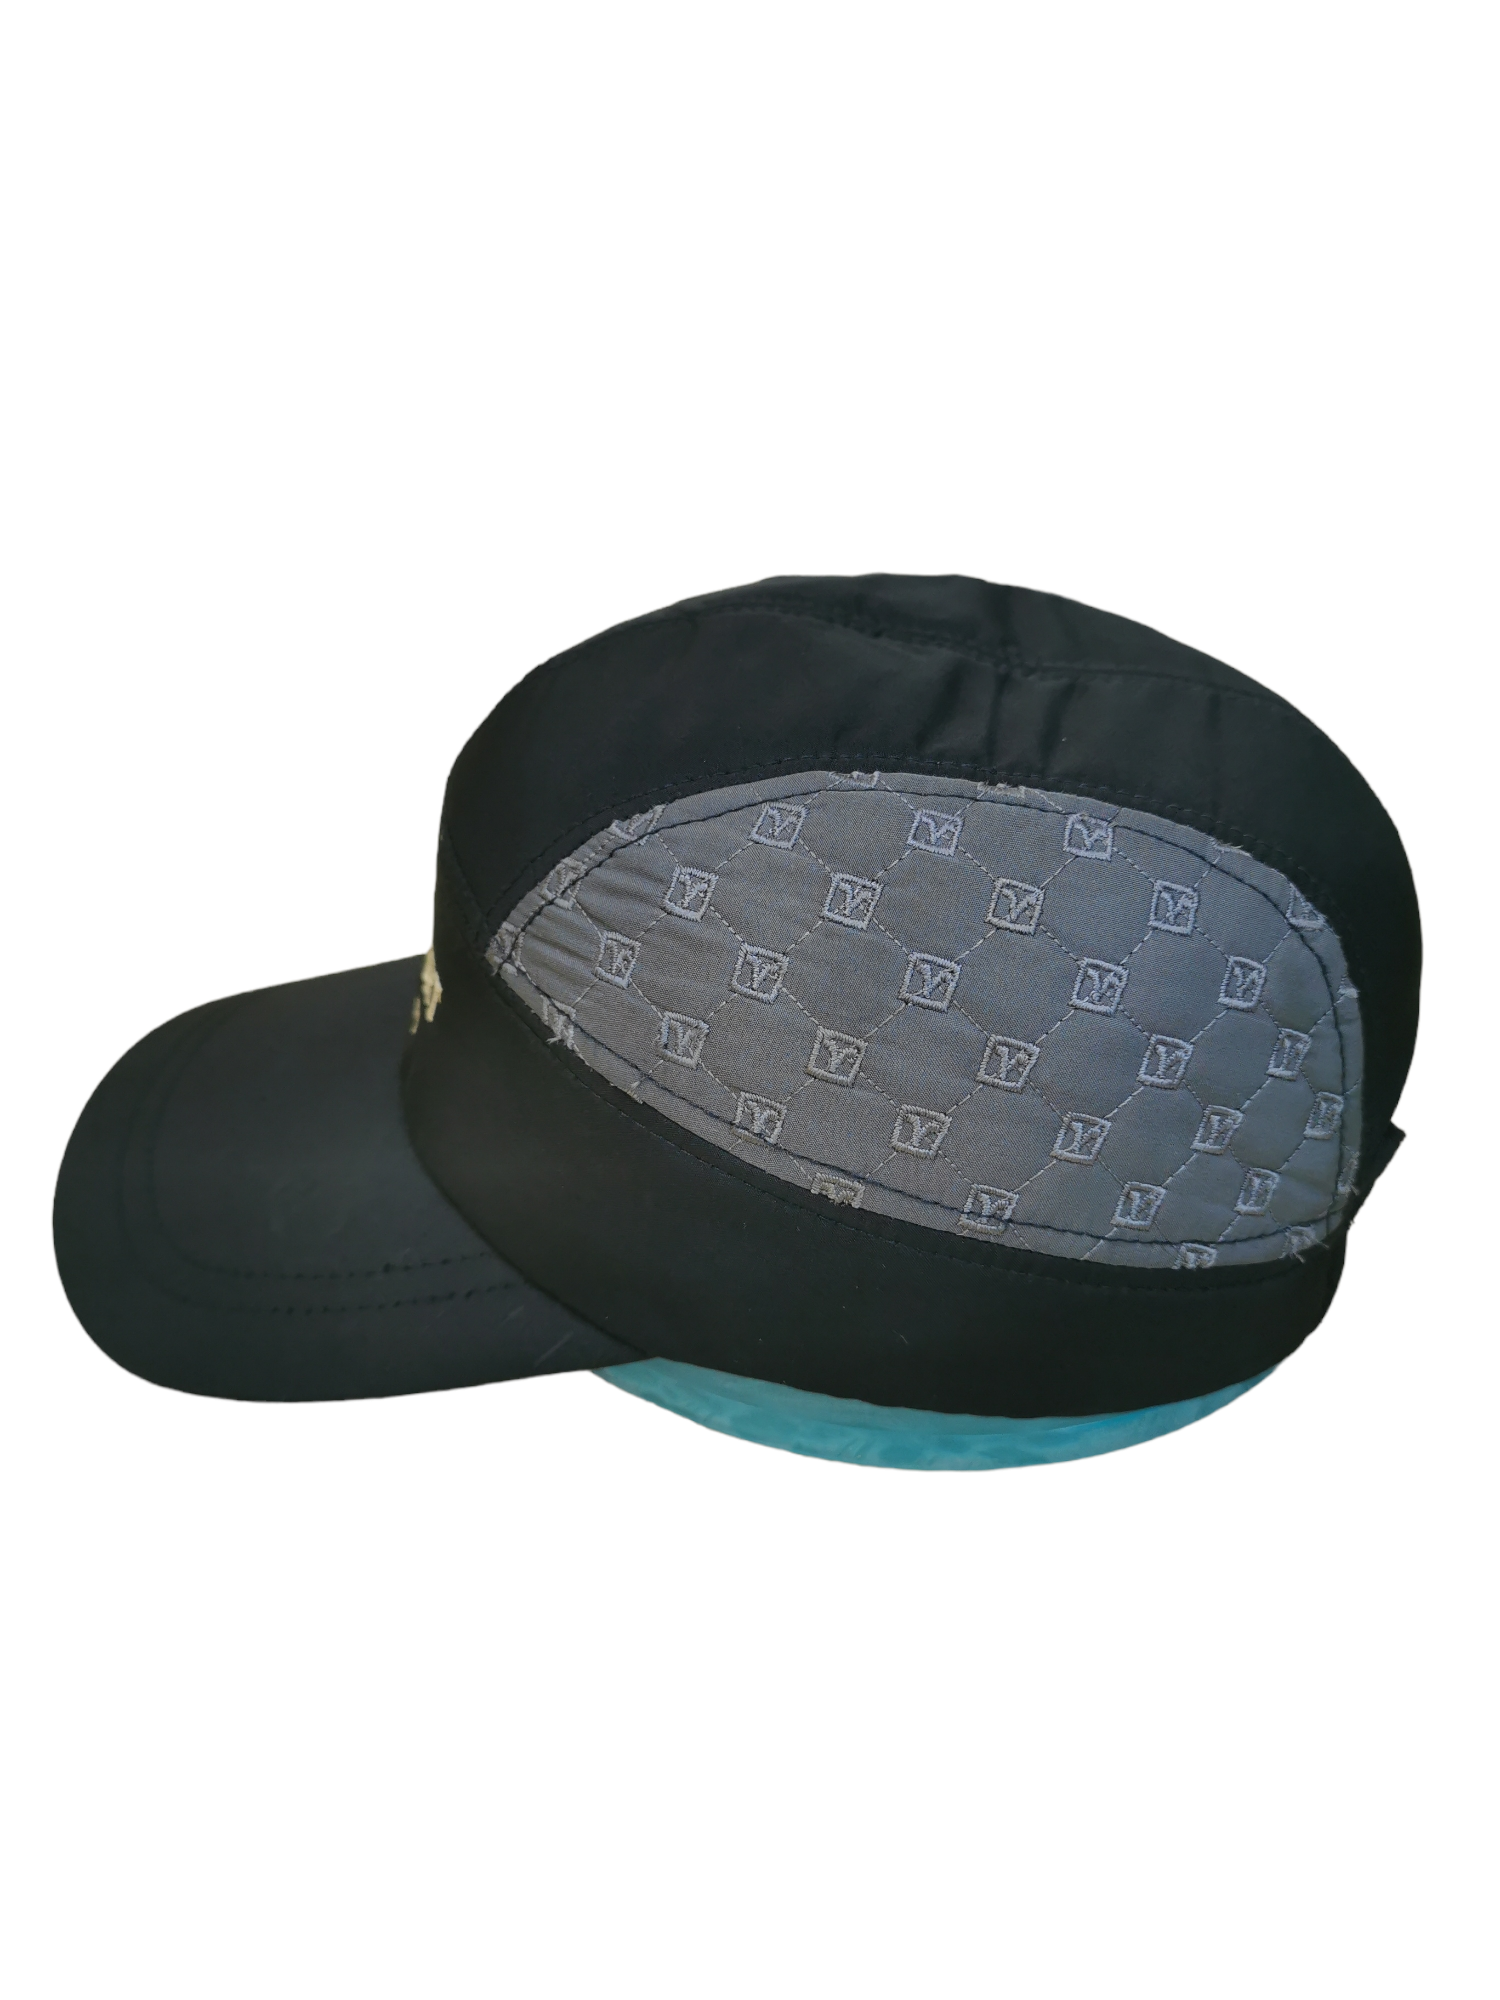 CLIMB VALENTINO RUDY ITALY HAT CAP - 3